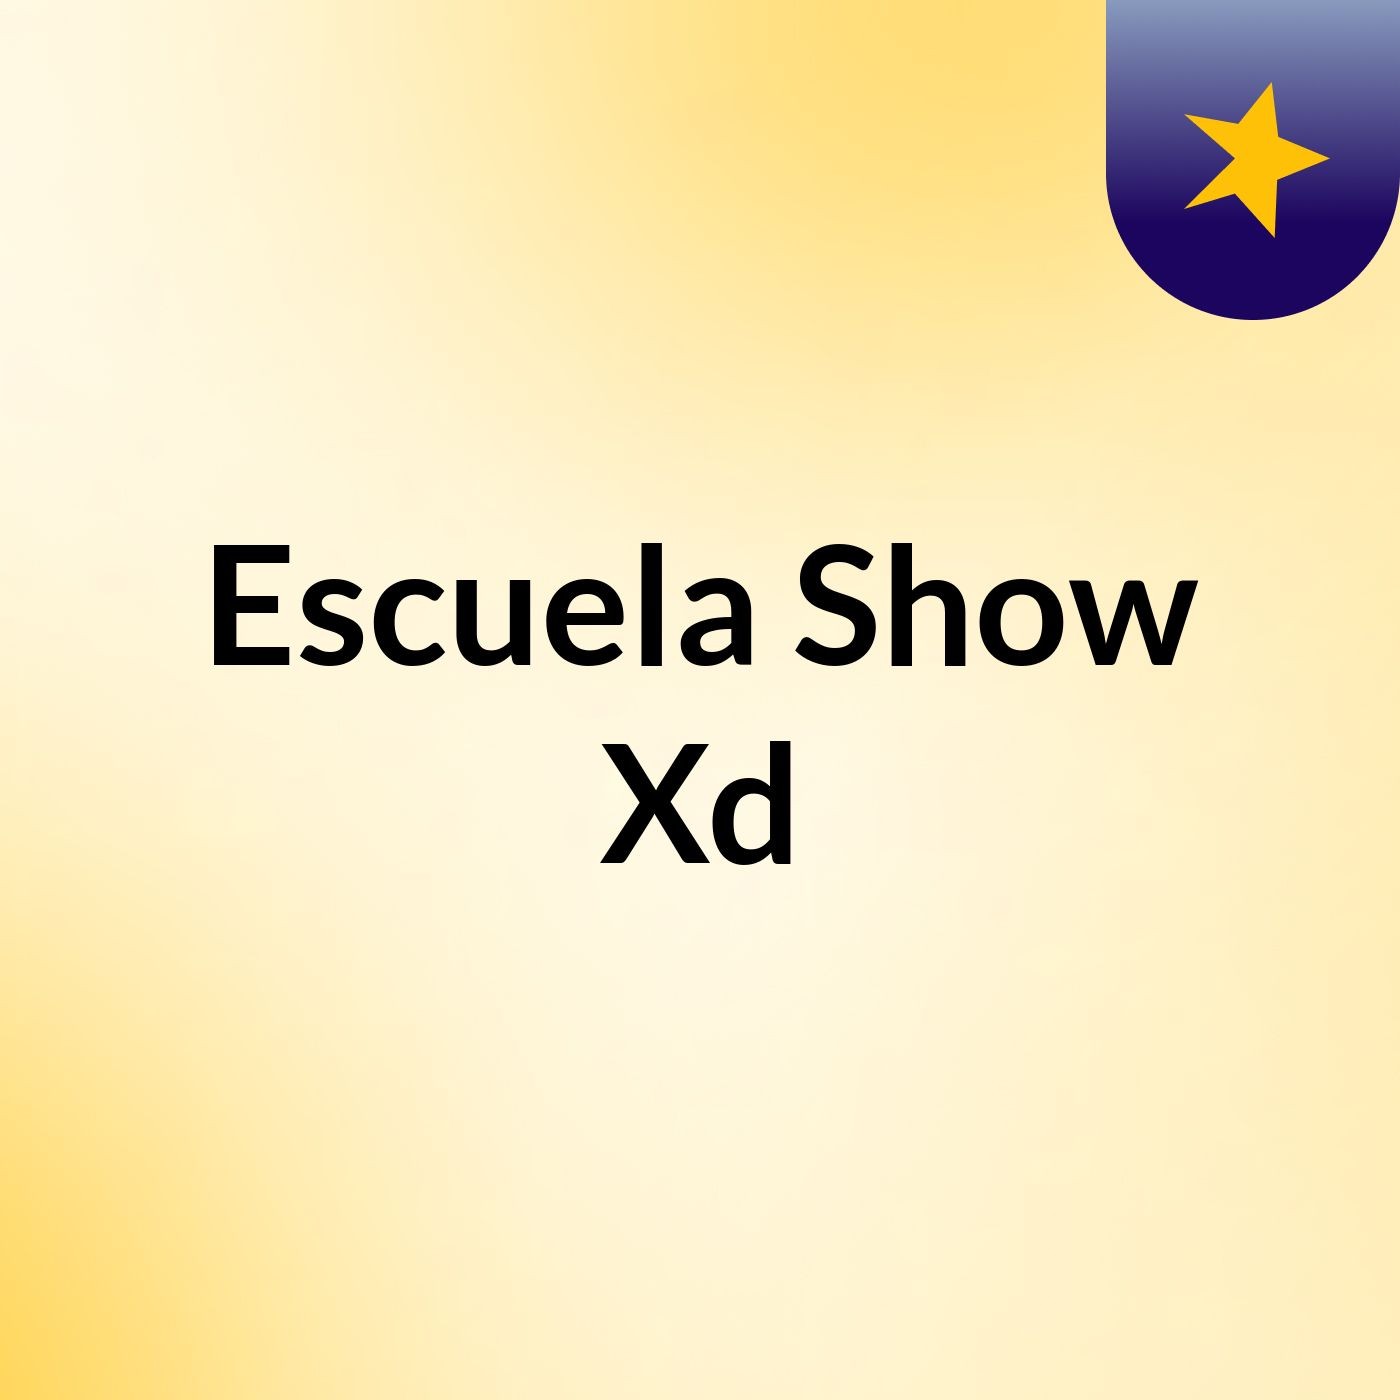 Escuela Show Xd